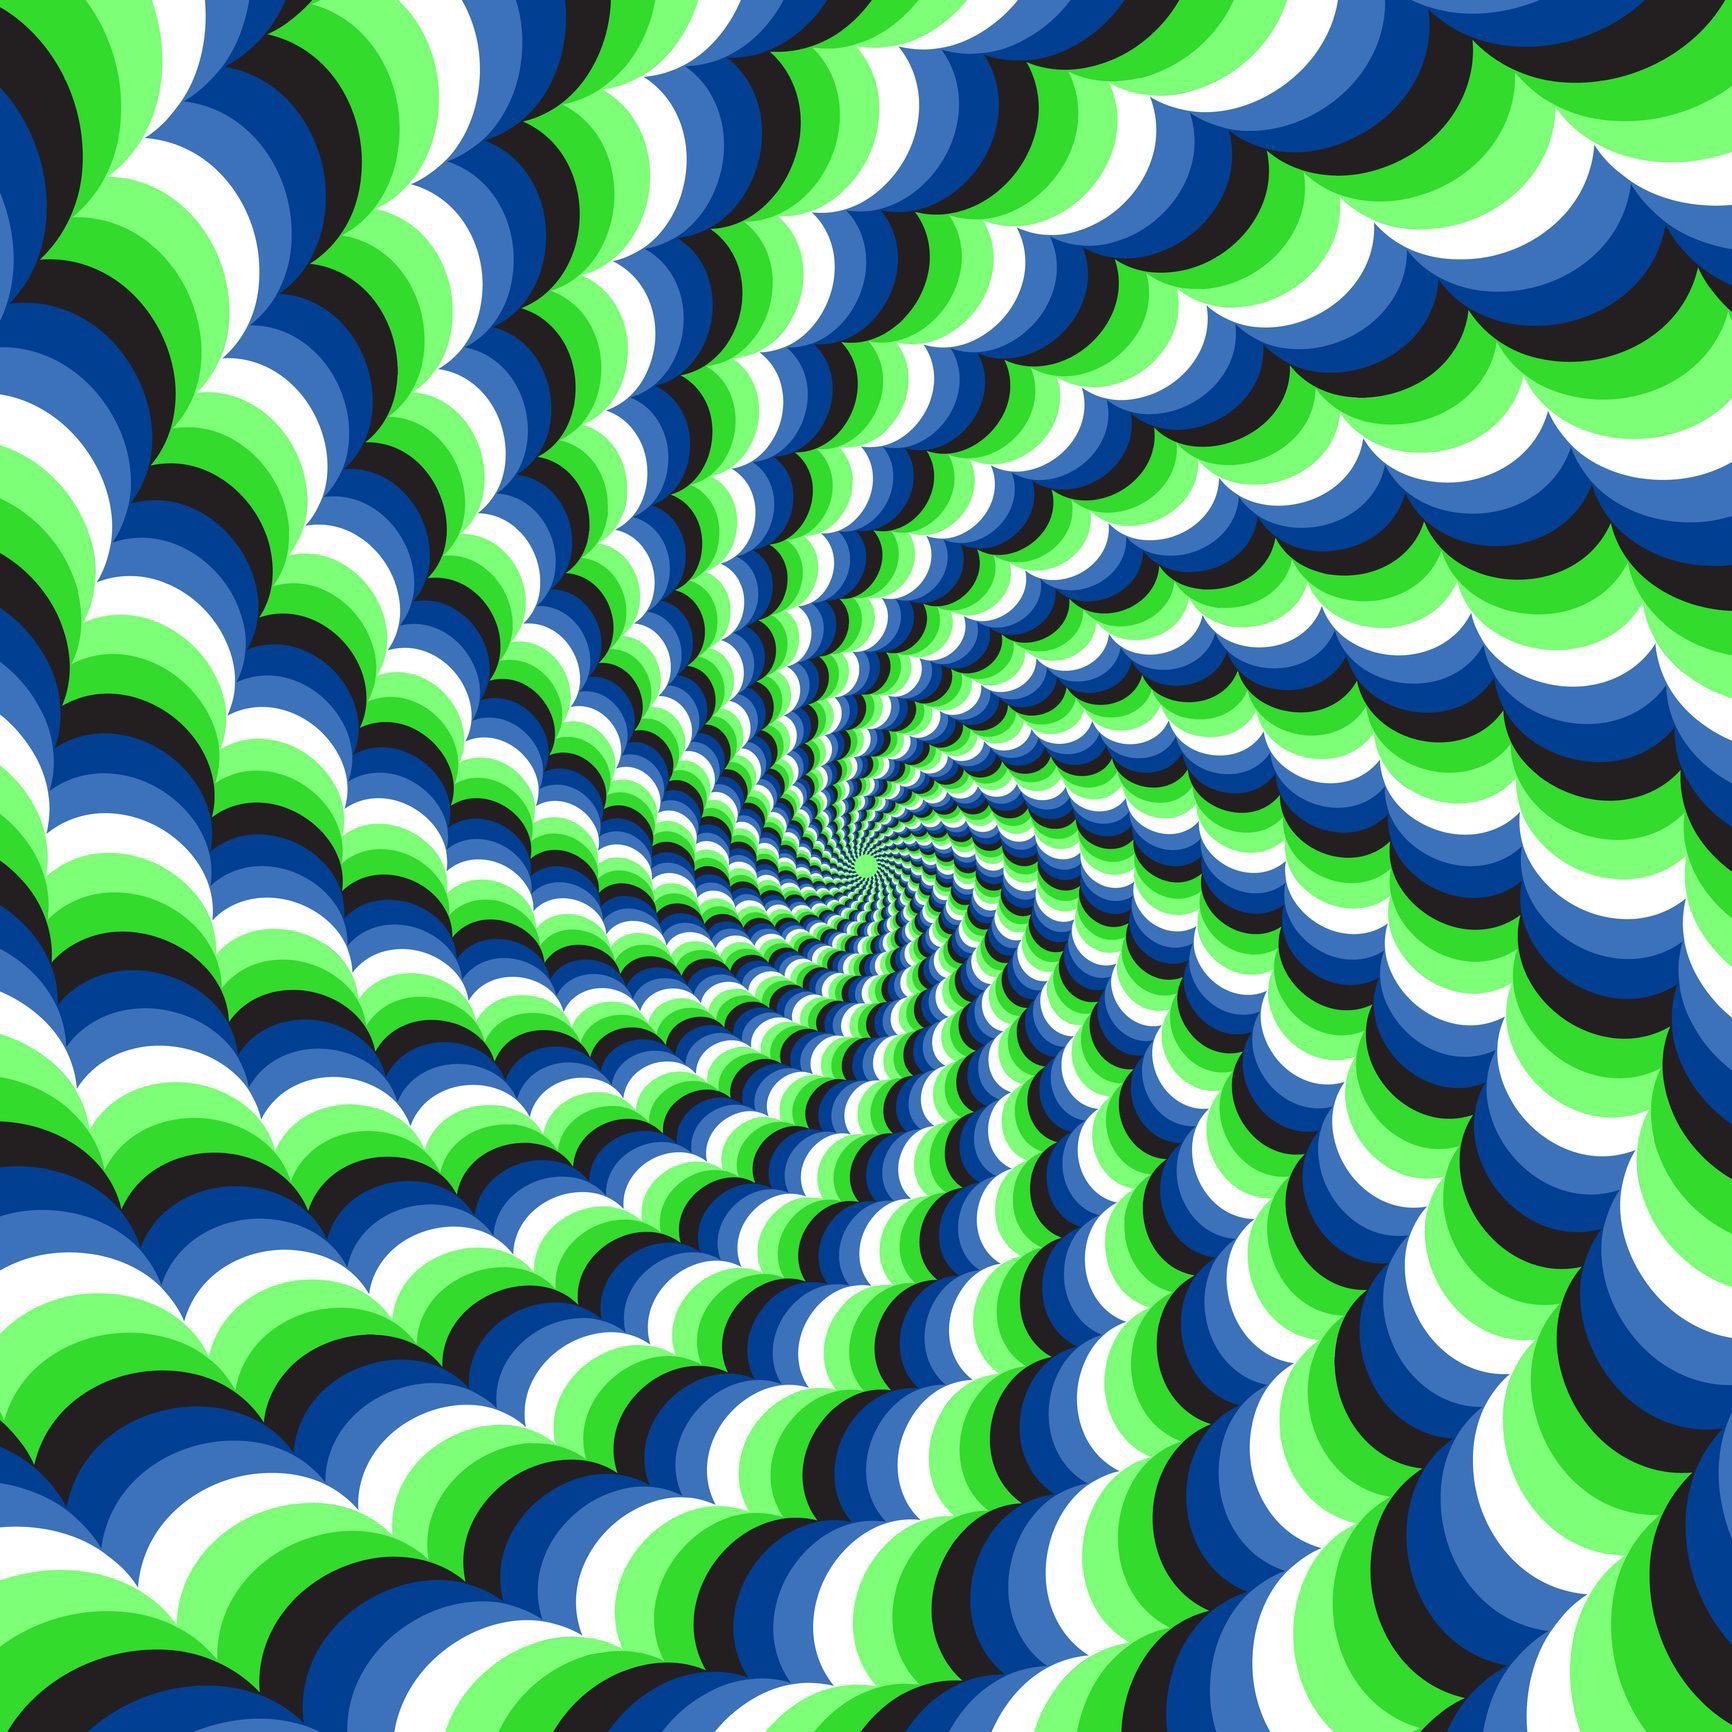 24 illusions d'optique complètement étourdissantes